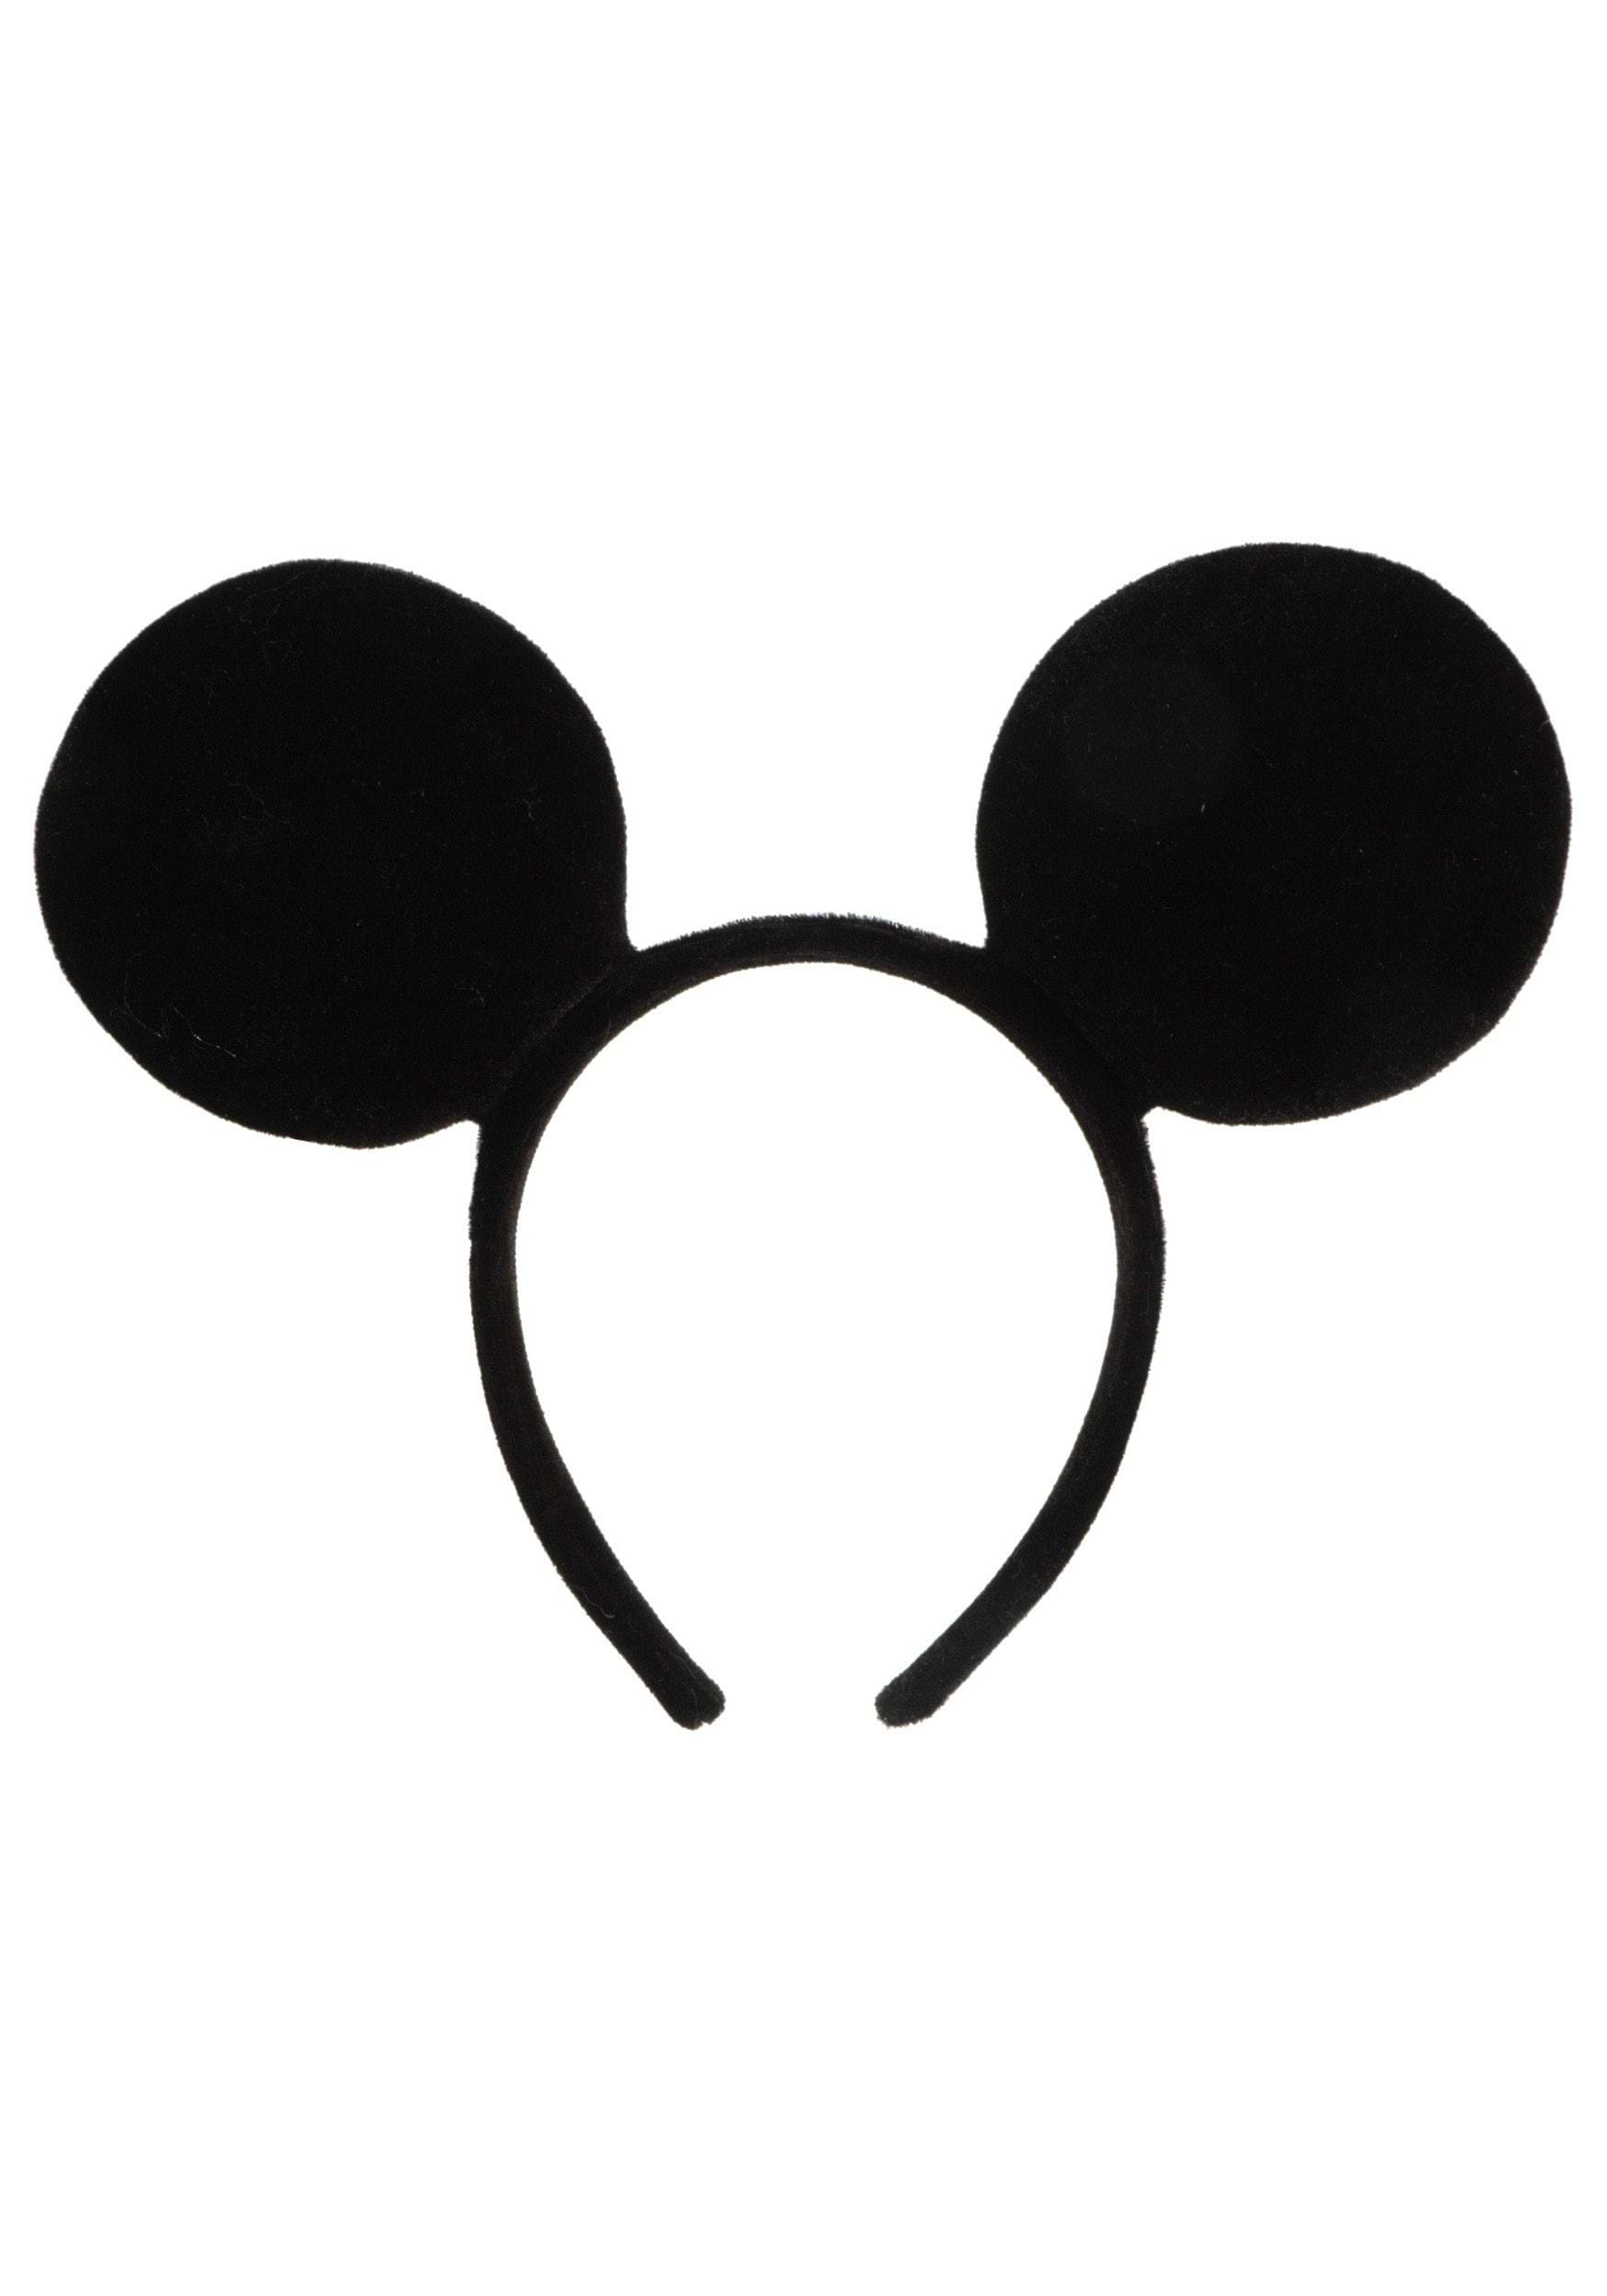 De trato fácil escaldadura suelo Mickey Mouse Ears Headpiece